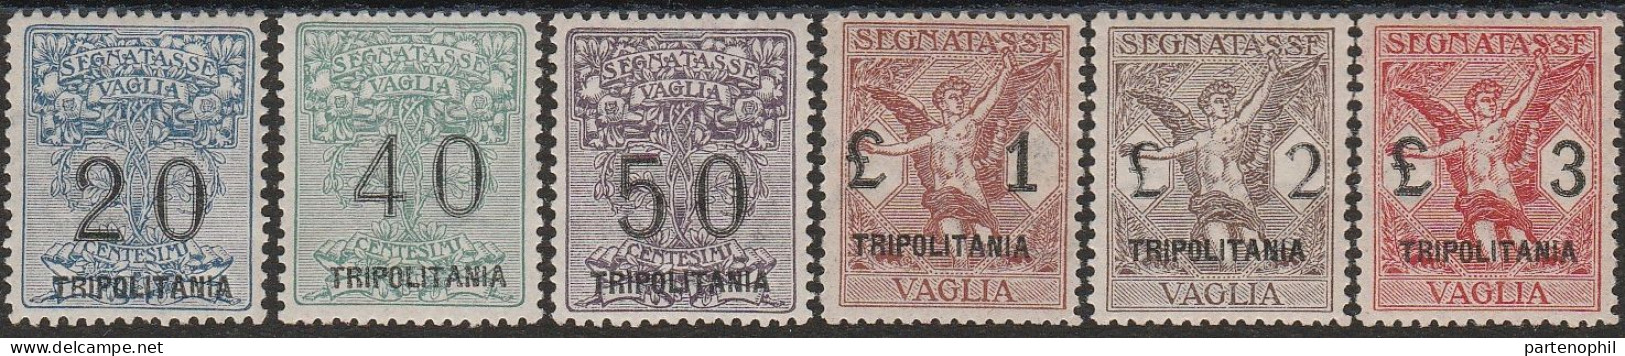 337 - Tripolitania 1924 - Segnatasse Per Vaglia - La Serie Ottimamente Centrata N. 1/6. Cert. Chiavarello. Cat. € 13000, - Tripolitania